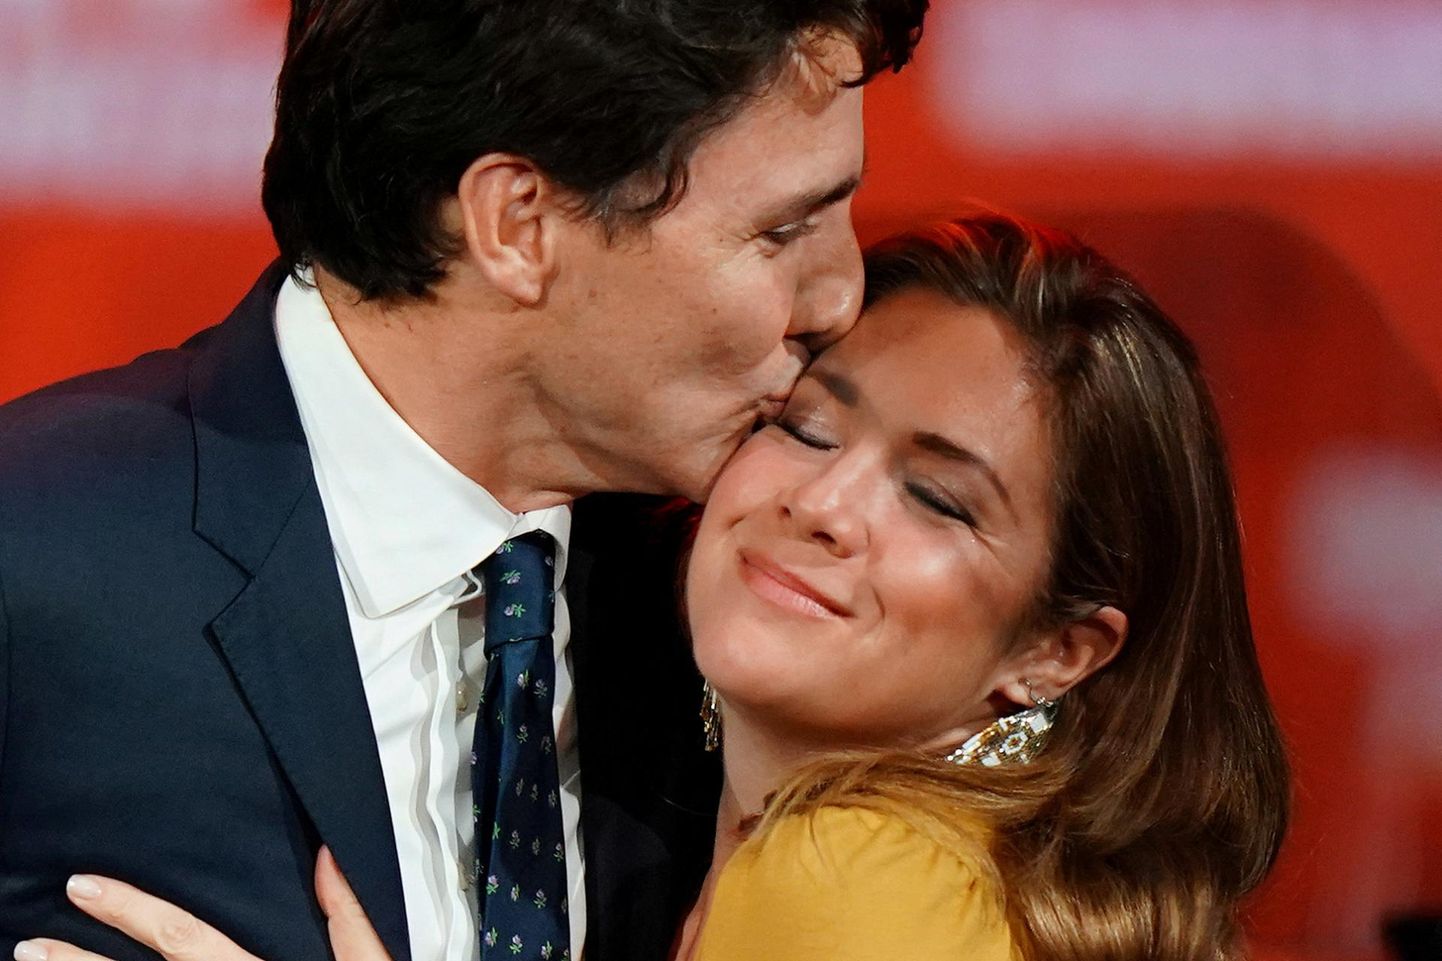 Sophie ja Justin Trudeau 18 aastat kestnud muinasjutuabielu on otsa saanud. FOTO: Carlo Allegri/REUTERS/Scanpix